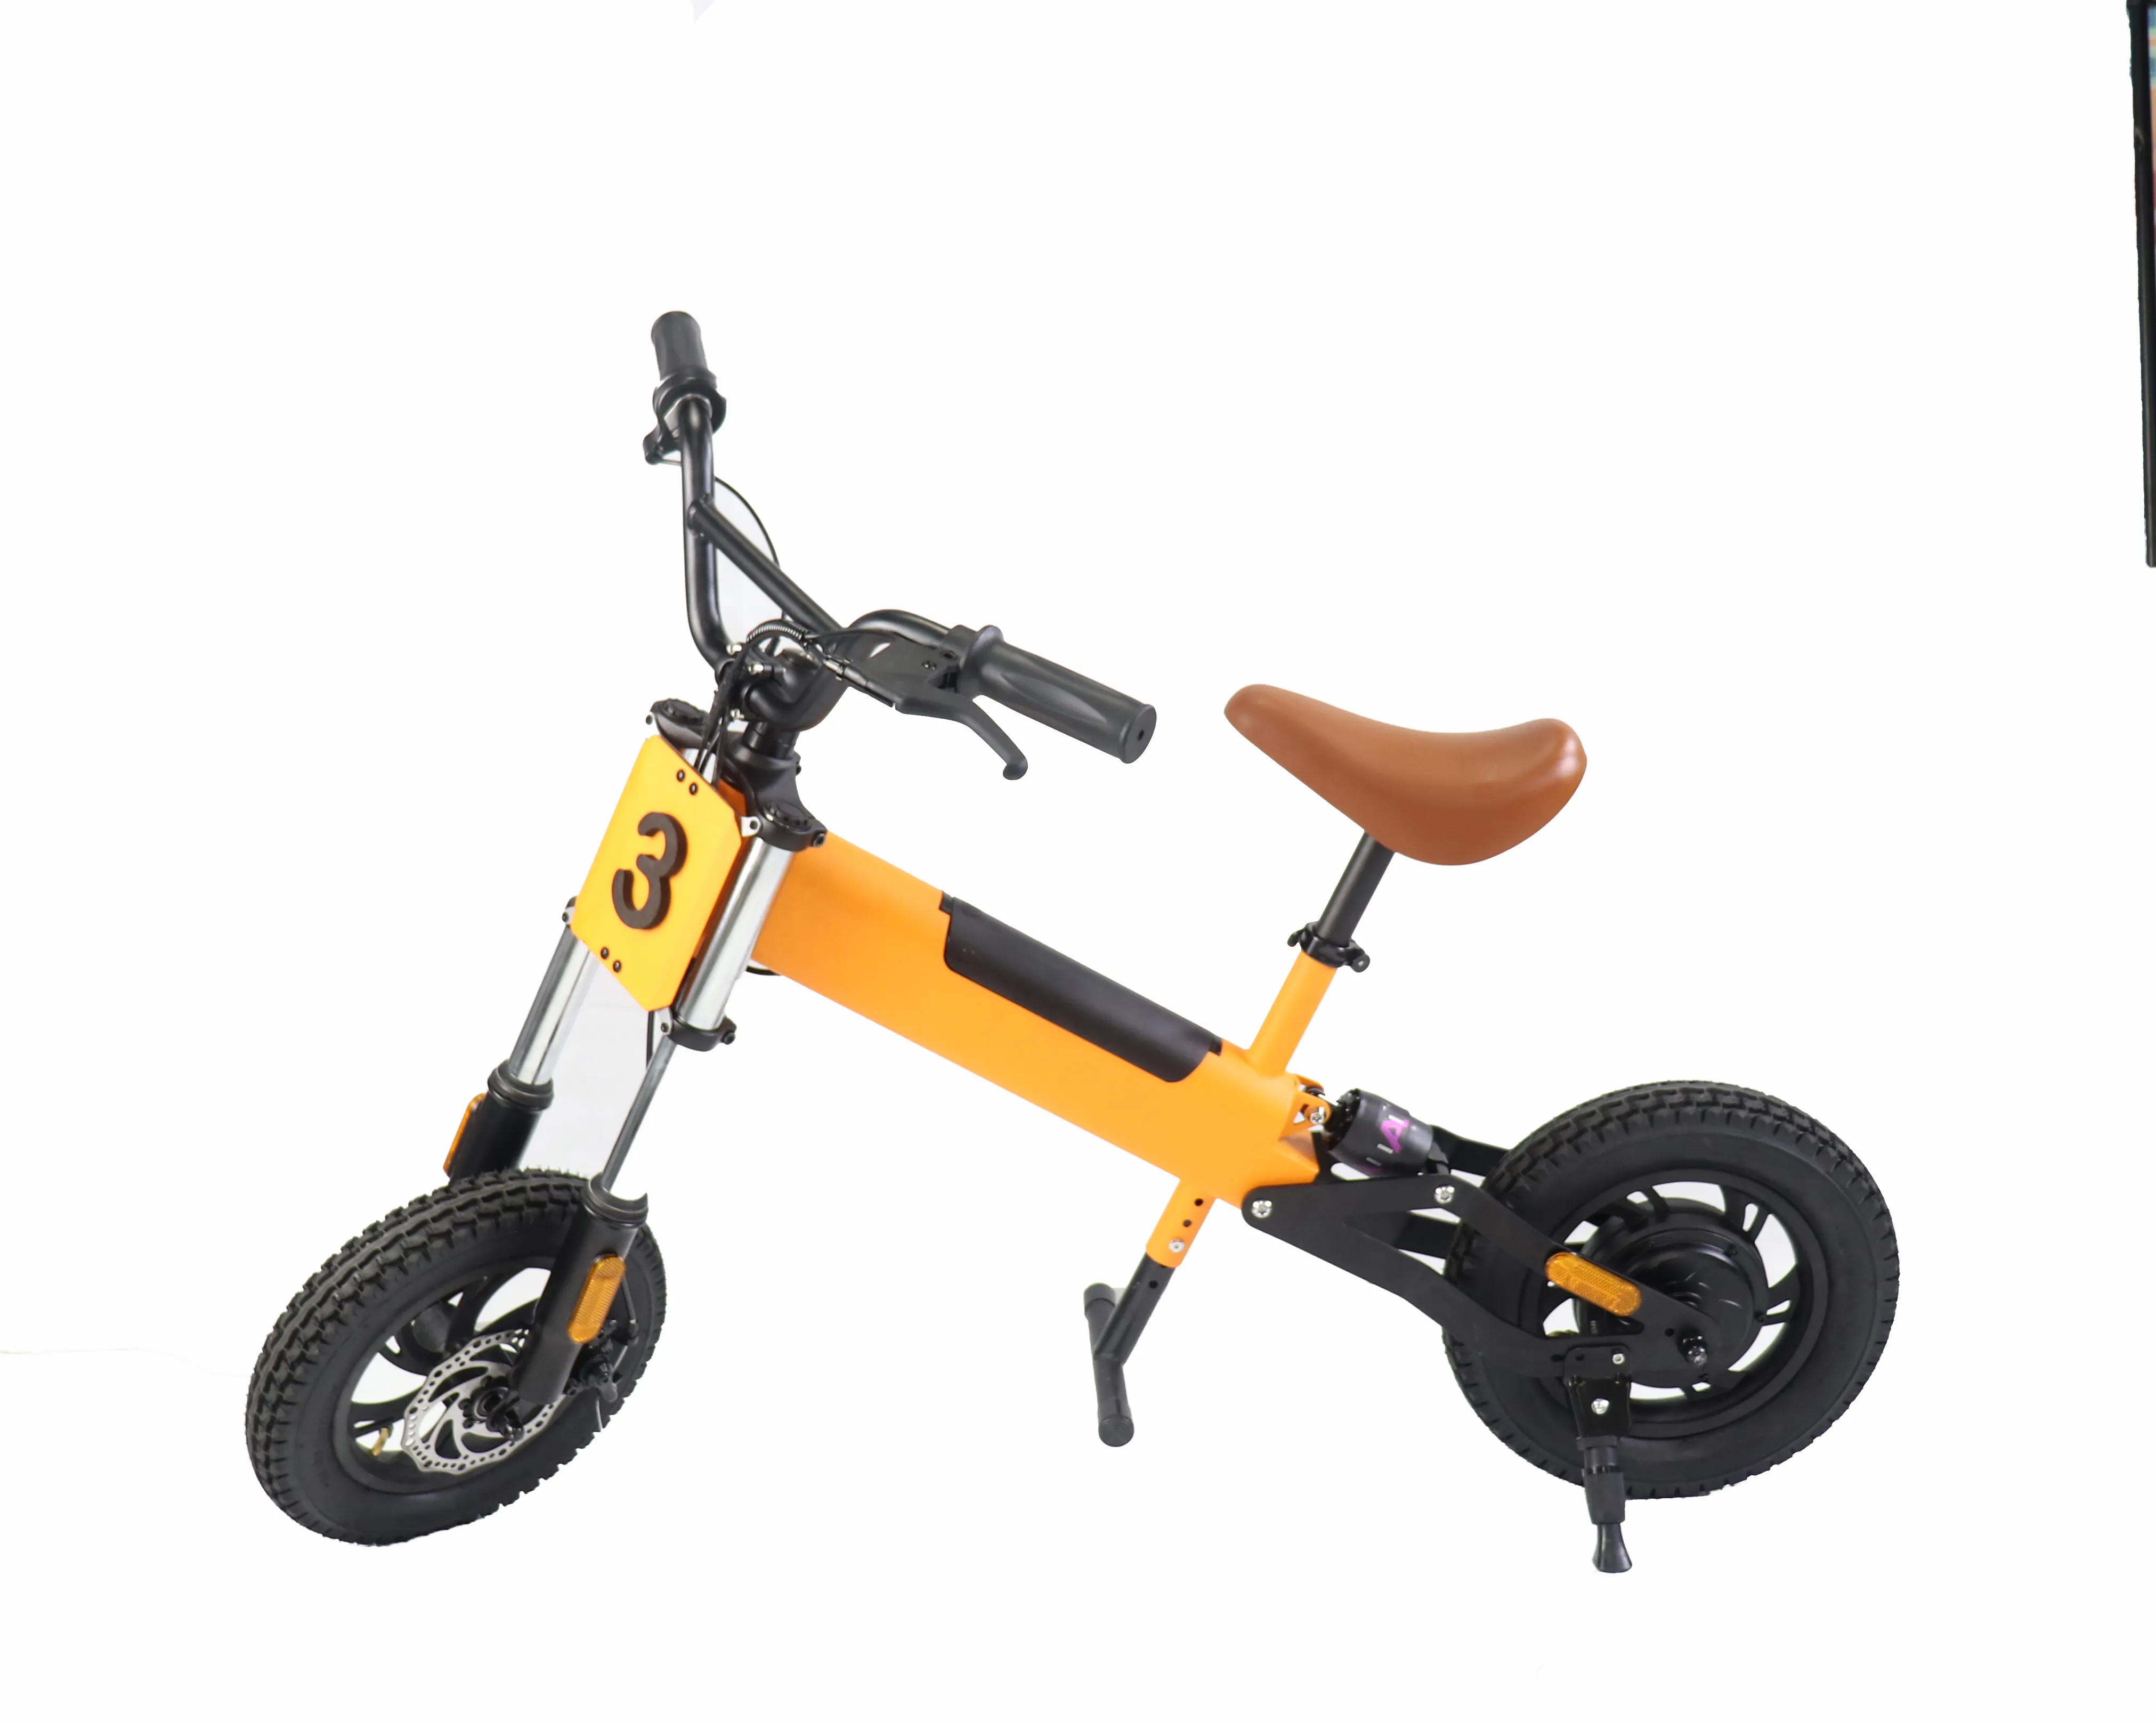 Oem Odm disponibile bici per bambini da 12 pollici prezzo economico distributori di biciclette per bambini di migliore qualità/Standard ce